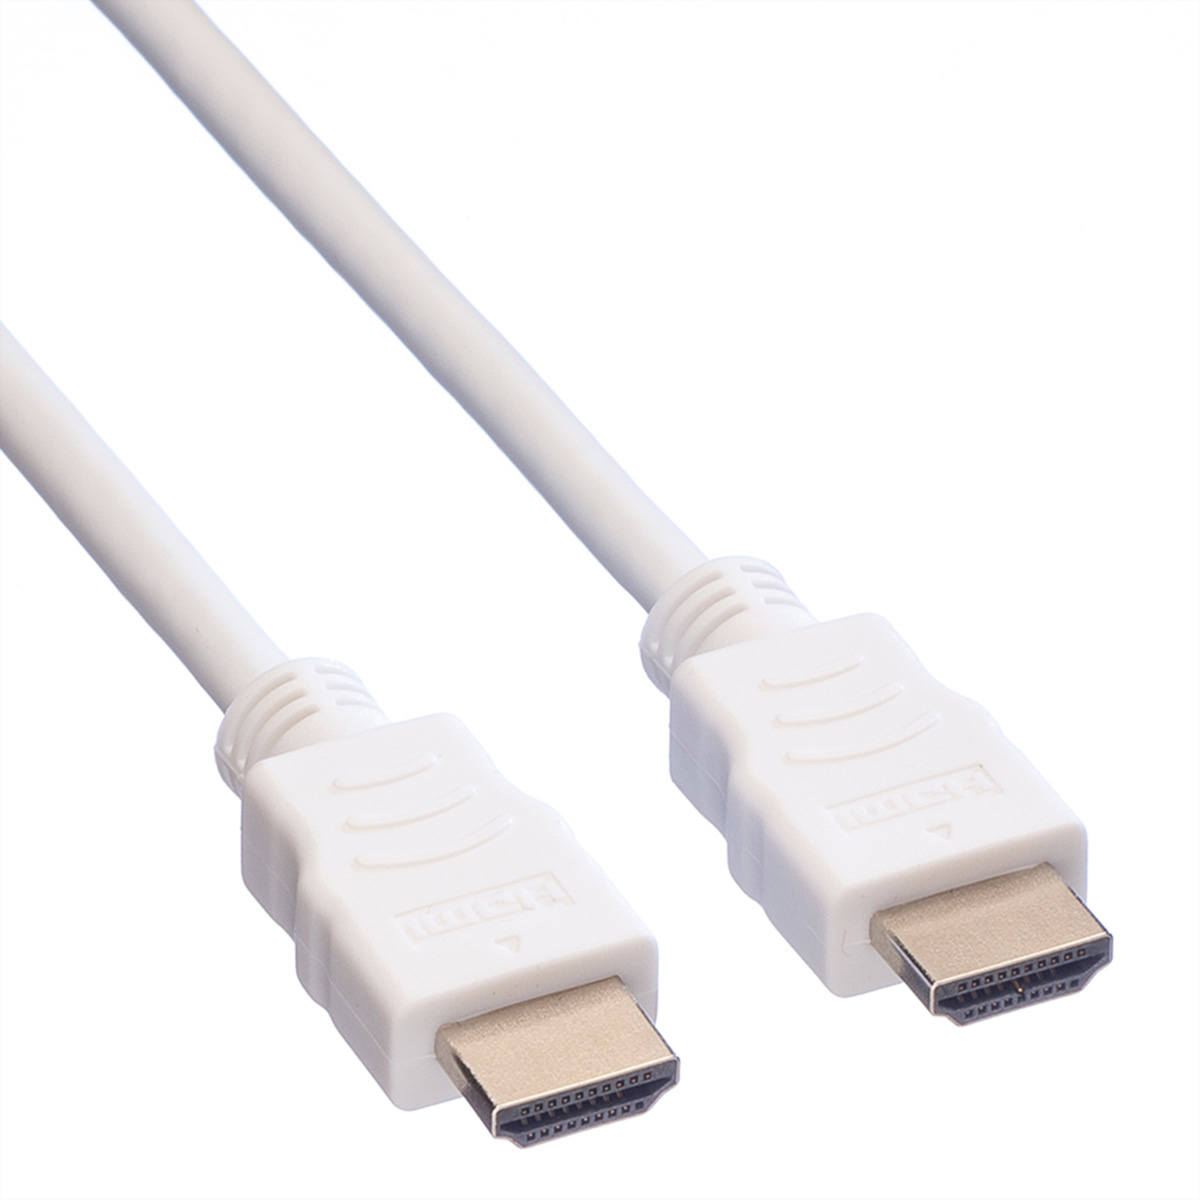 VALUE HDMI High Kabel Ethernet Ethernet mit Speed Speed Kabel HDMI High mit